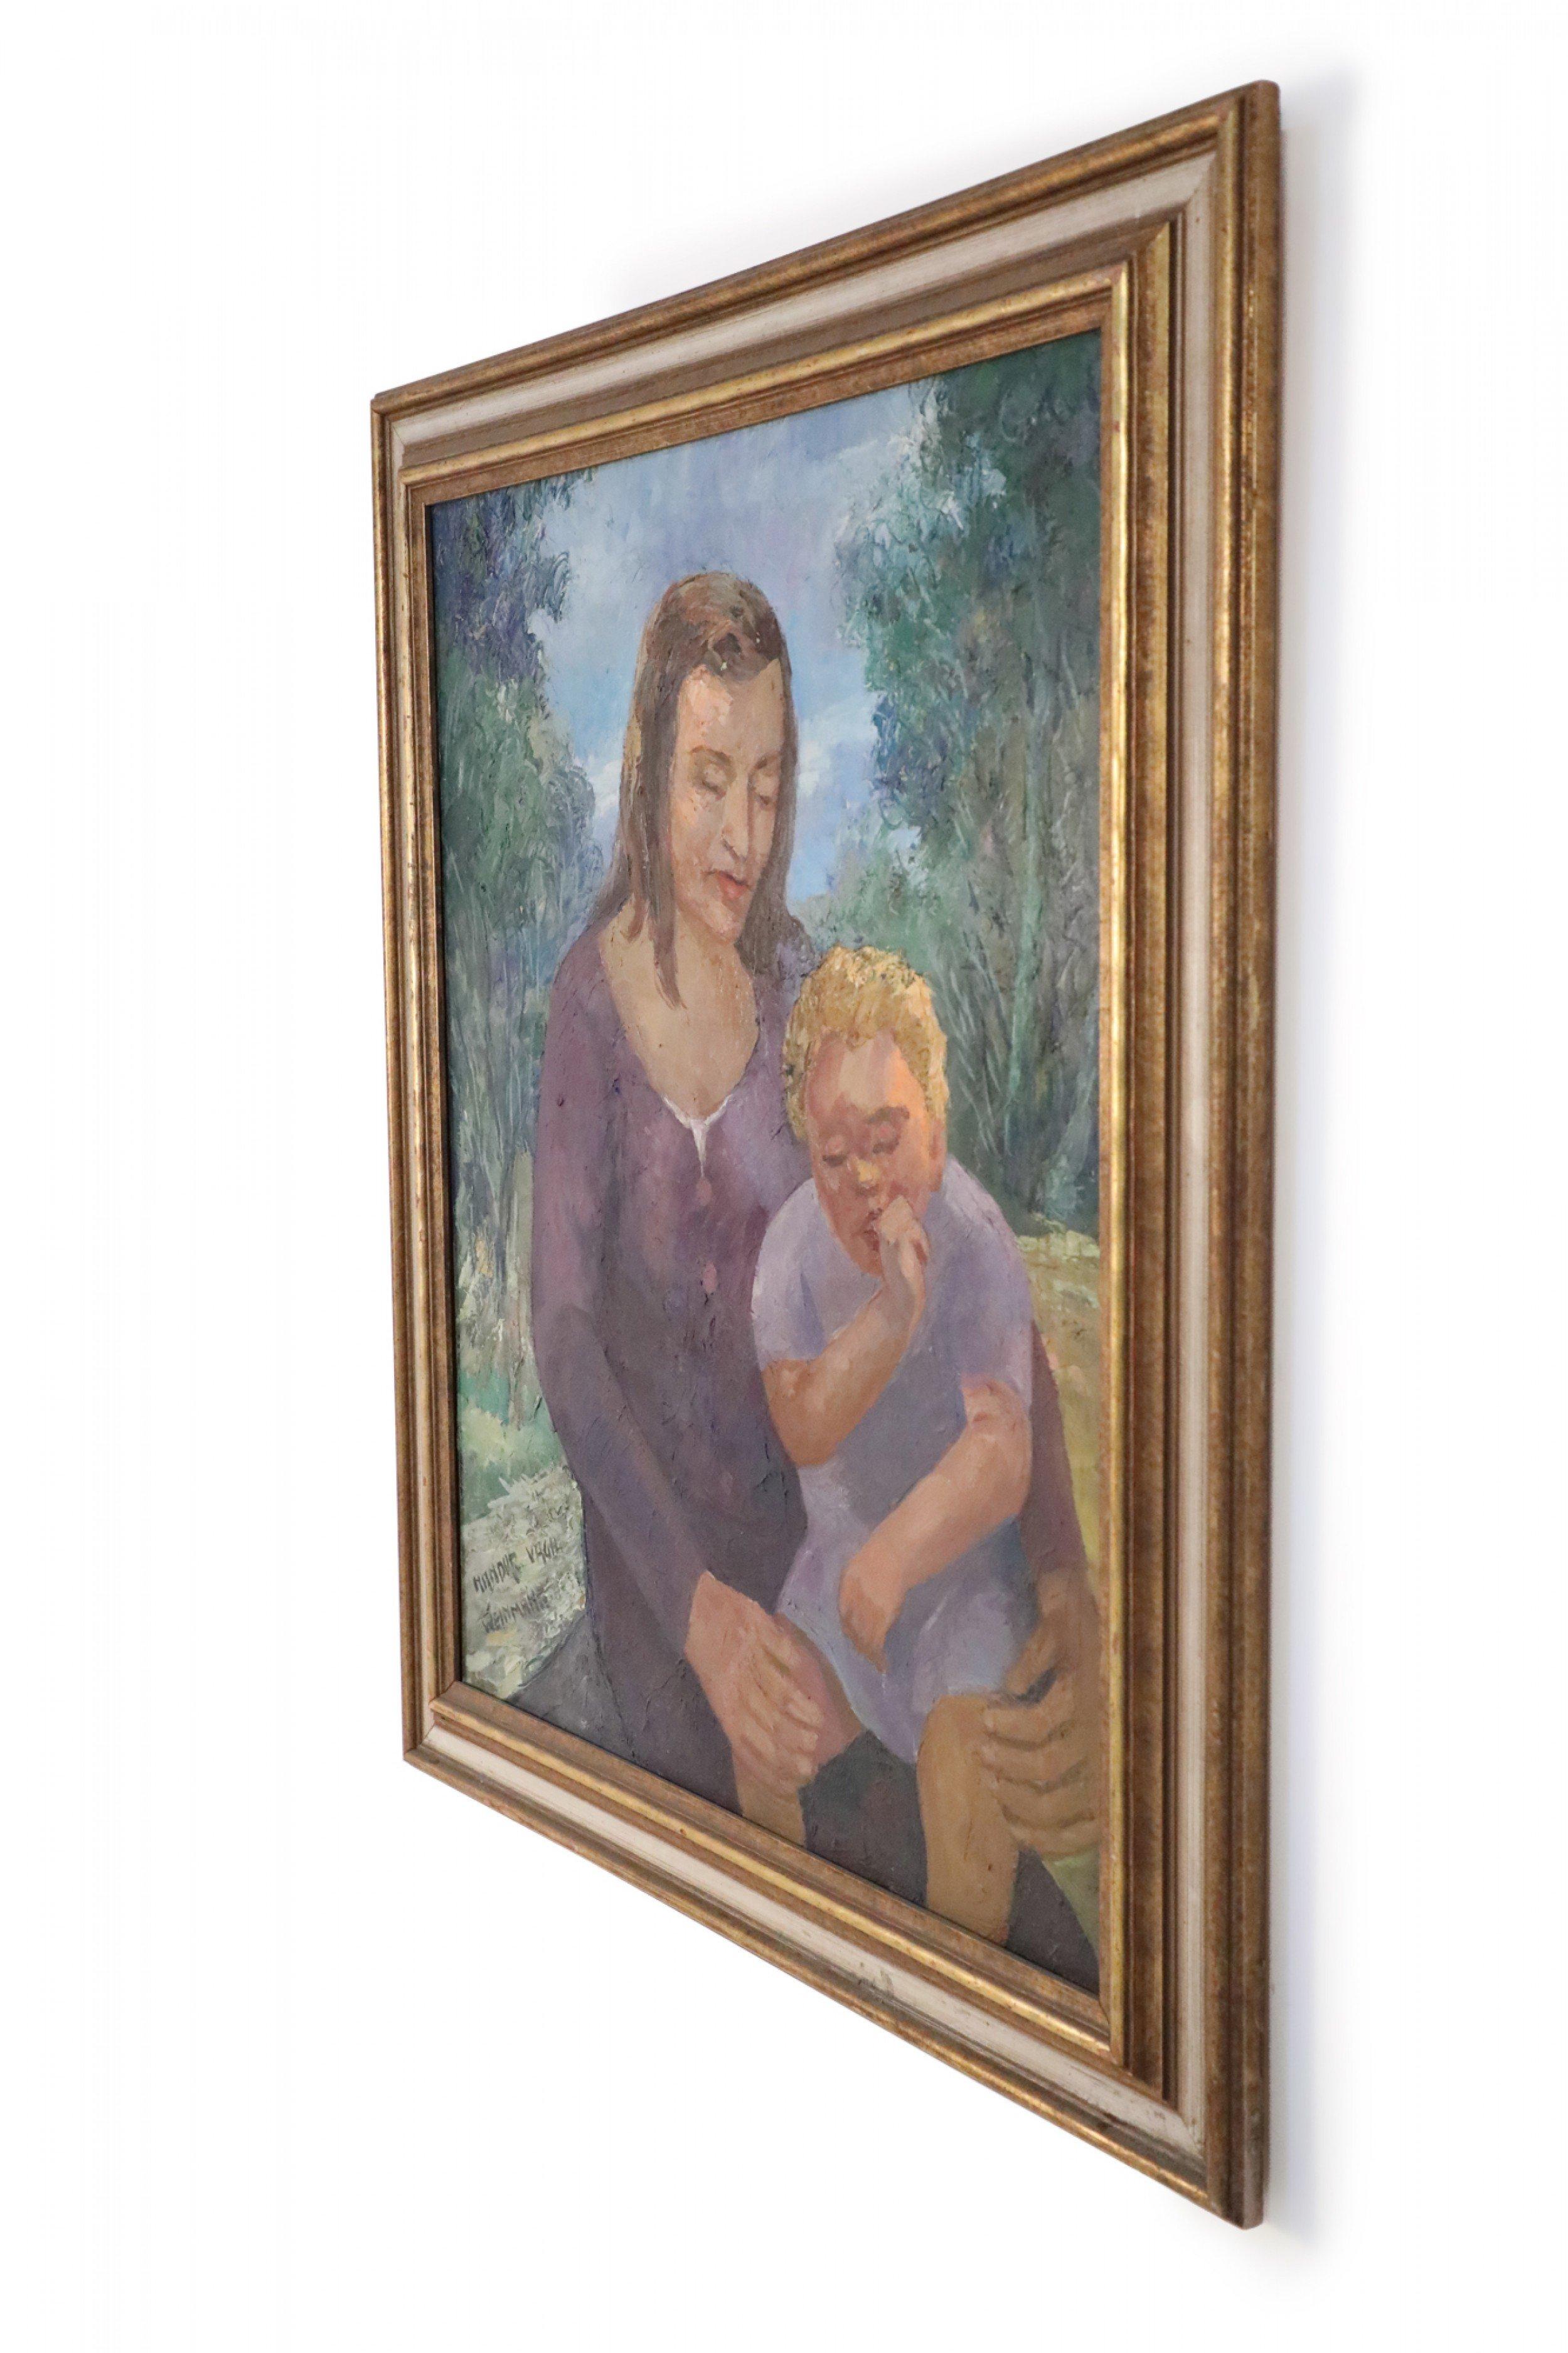 Peinture à l'huile d'époque (20e siècle) représentant une femme tenant sur ses genoux un enfant suçant son pouce, sur un fond de nature, dans un cadre rectangulaire en bois doré.